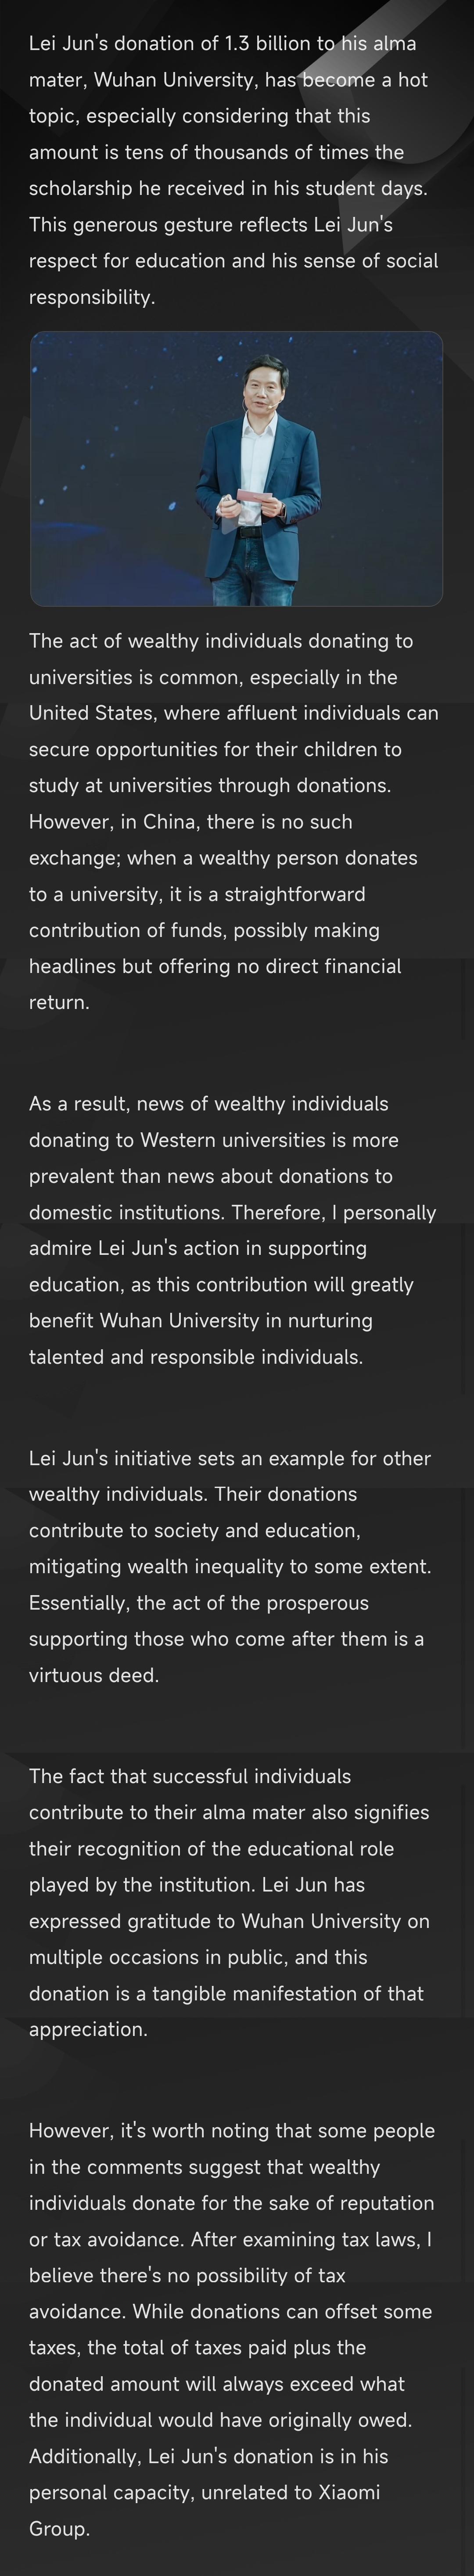 雷军个人向武汉大学捐赠13亿元现金；B站三季度营收58.1亿元… - 知乎